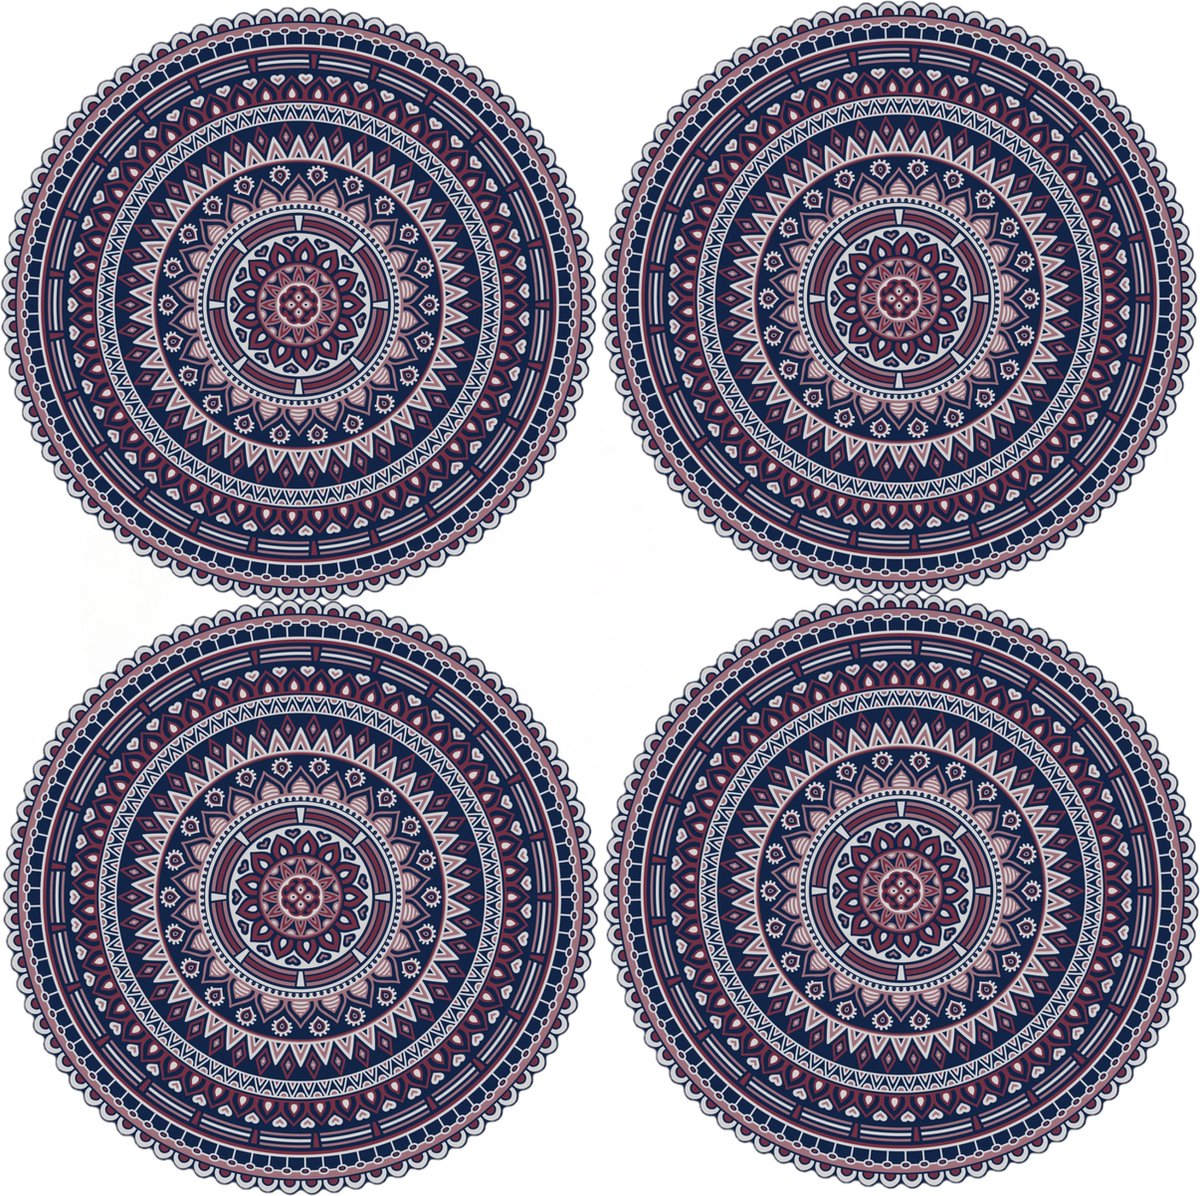 12x stuks Ibiza stijl ronde donkerblauwe placemats van vinyl D38 cm - Antislip/waterafstotend - Stevige top kwaliteit